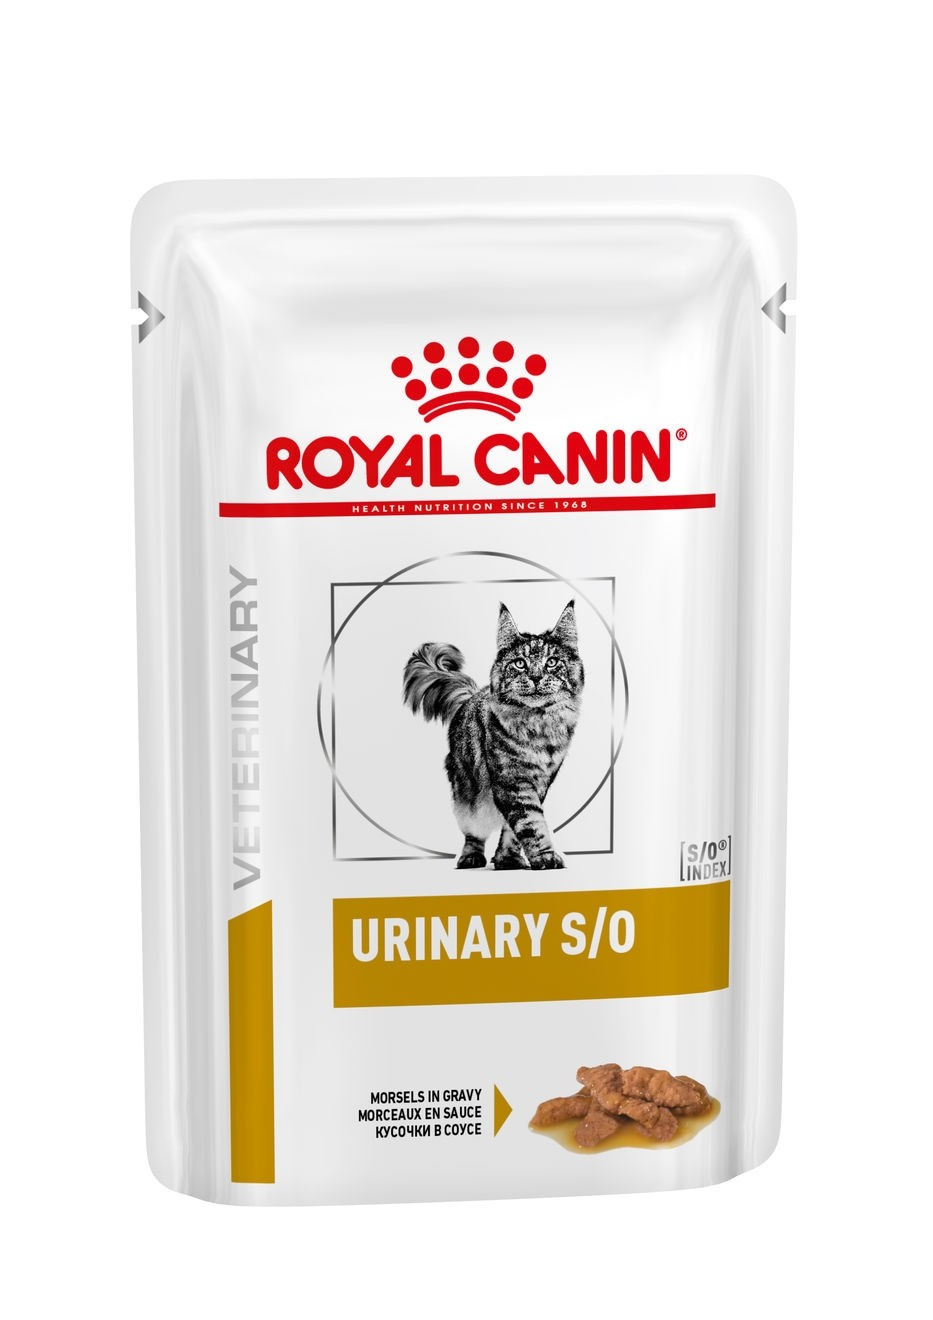 Royal Canin Veterinary Urinary S/O